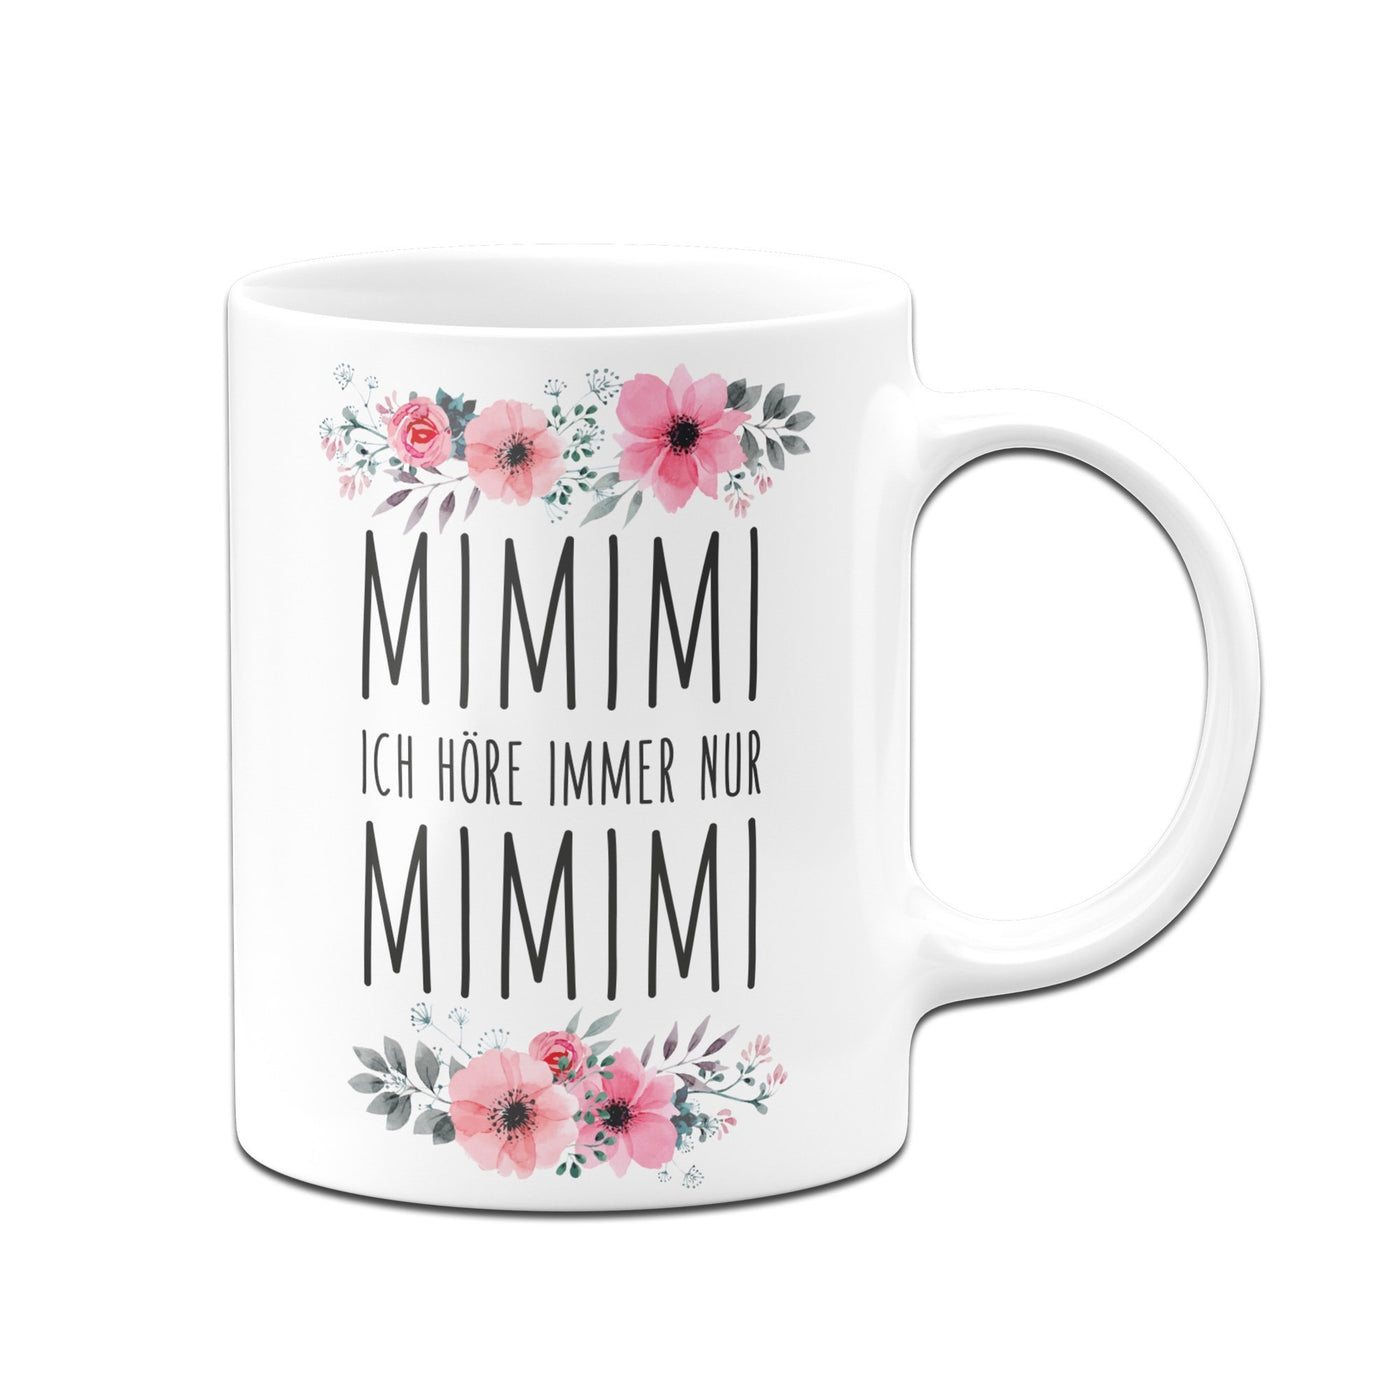 Bild: Tasse - Ich höre Immer nur mimimi - blumig Geschenkidee